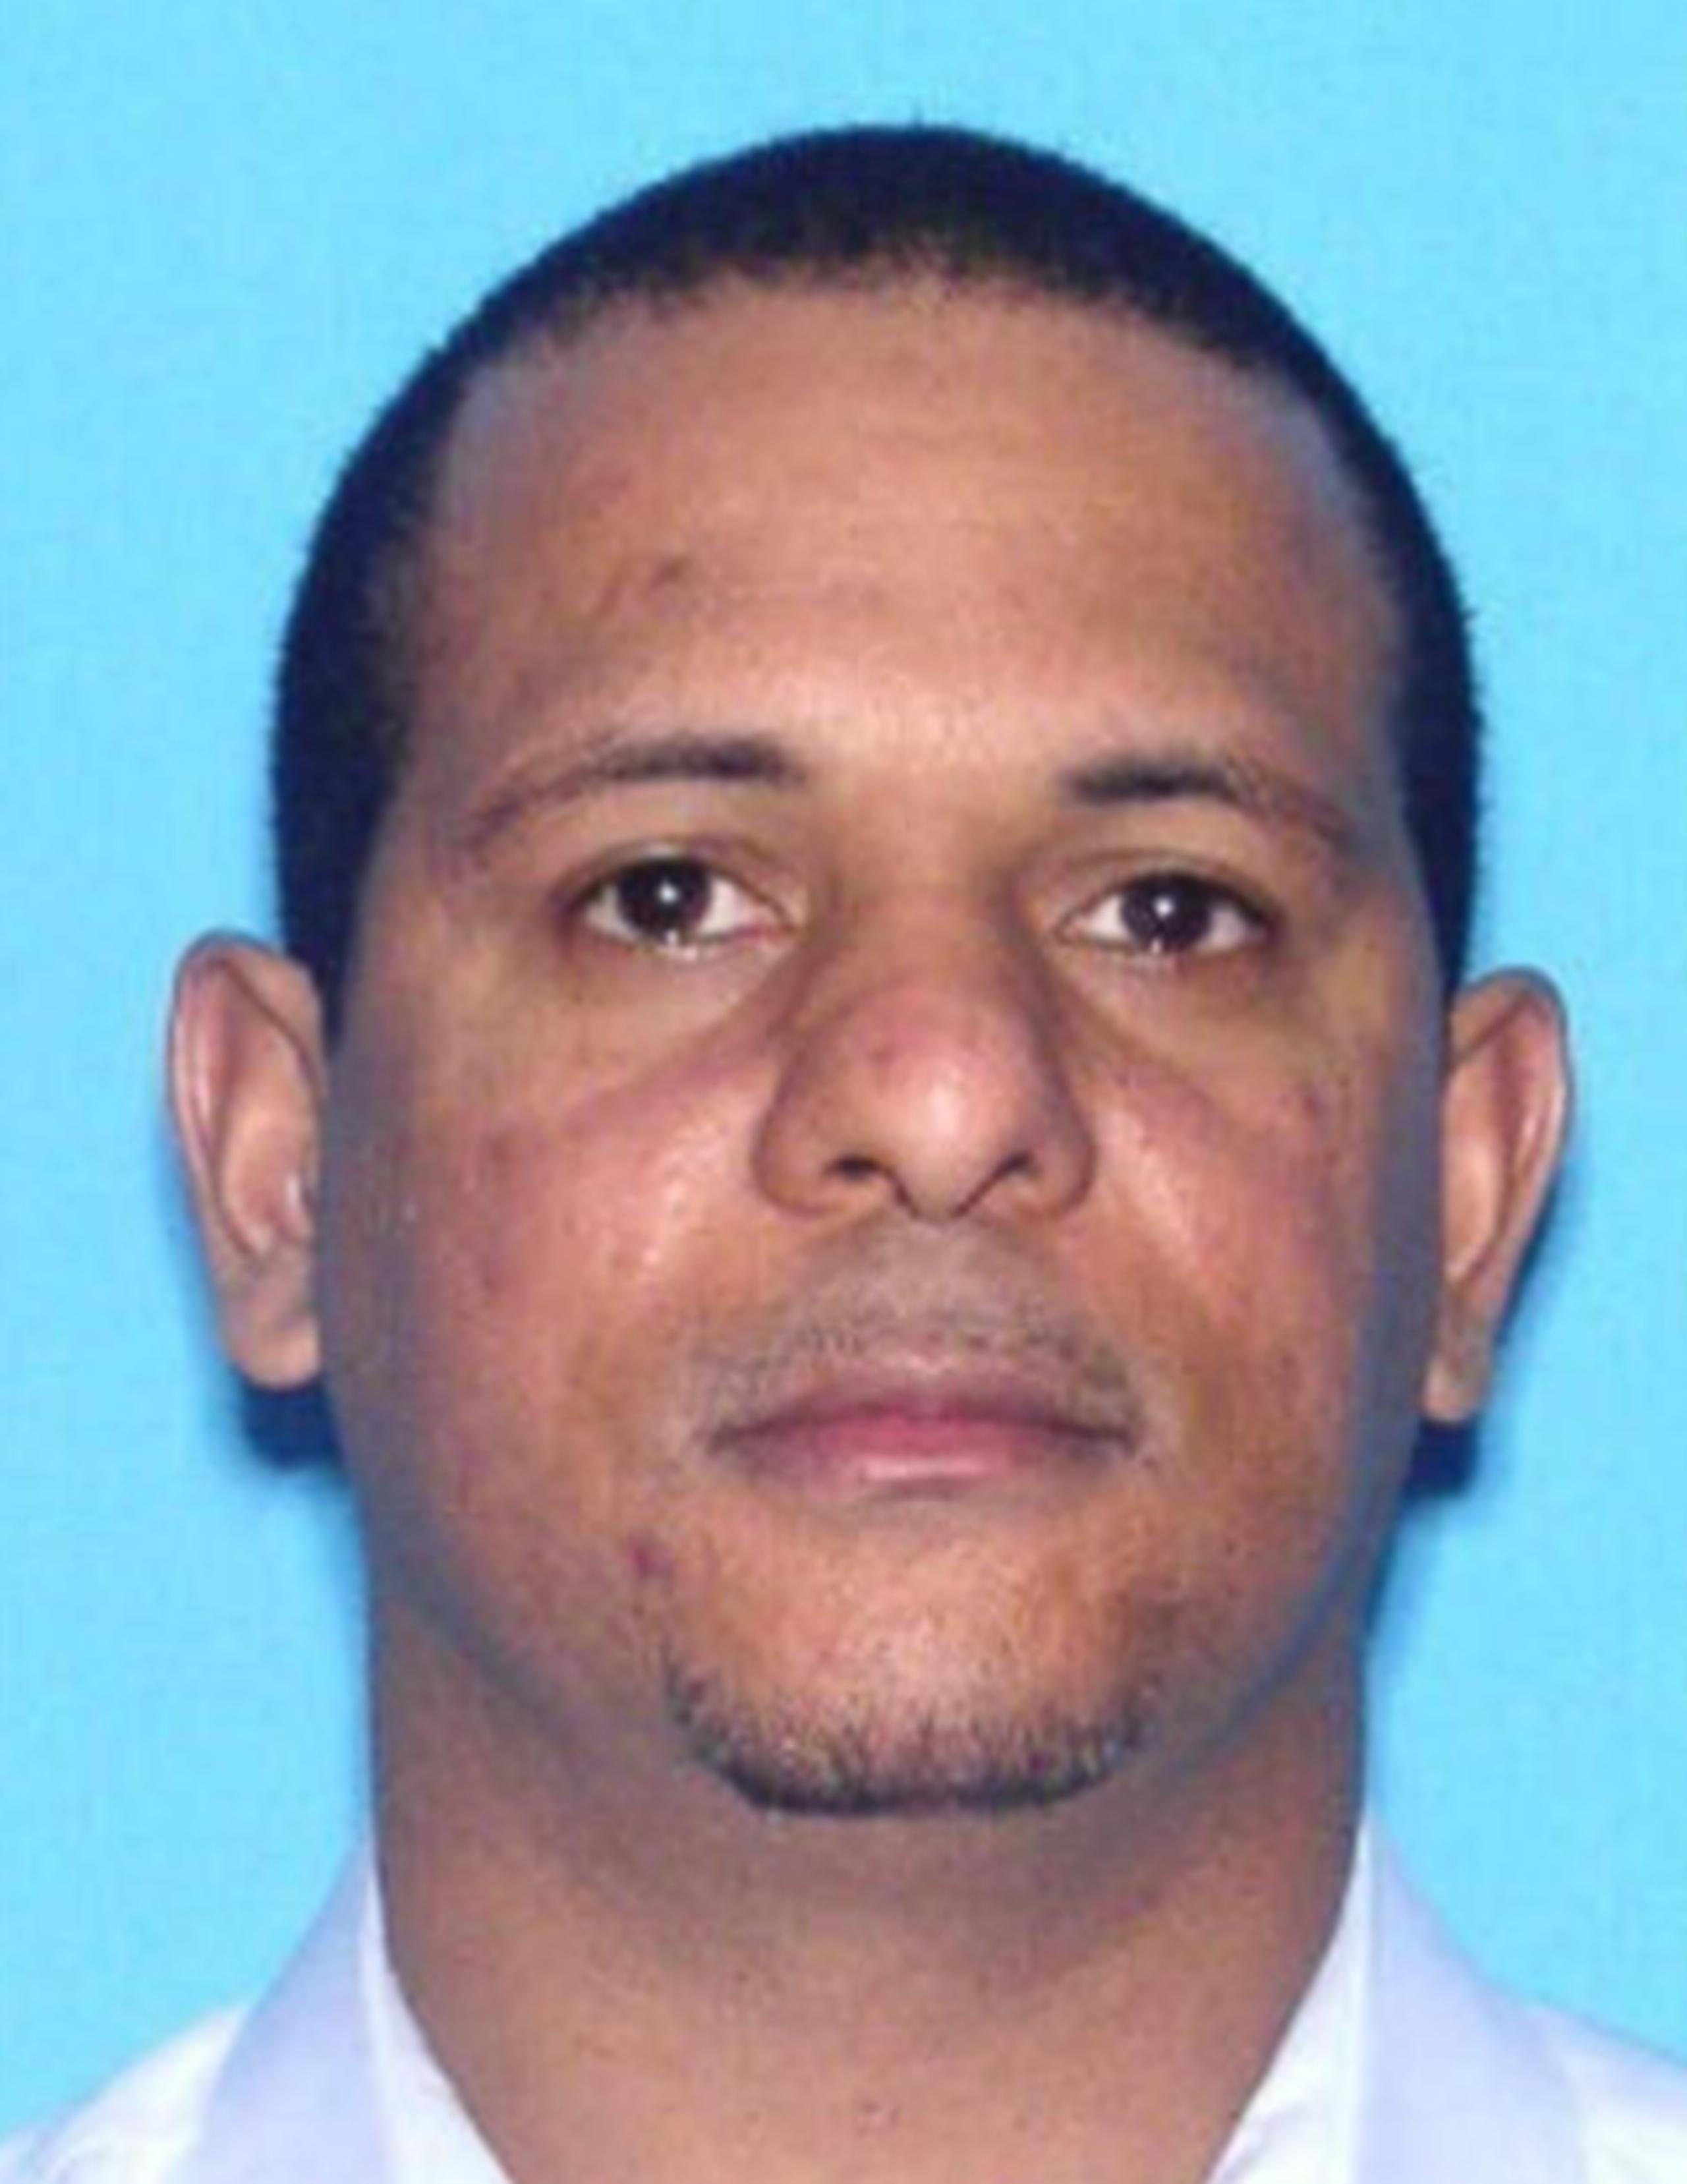 Derrick L. Frieson, quien era buscado por el delito de homicidio negligente en estado de Florida fue arrestado  en el barrio Arenales, en Aguadilla.